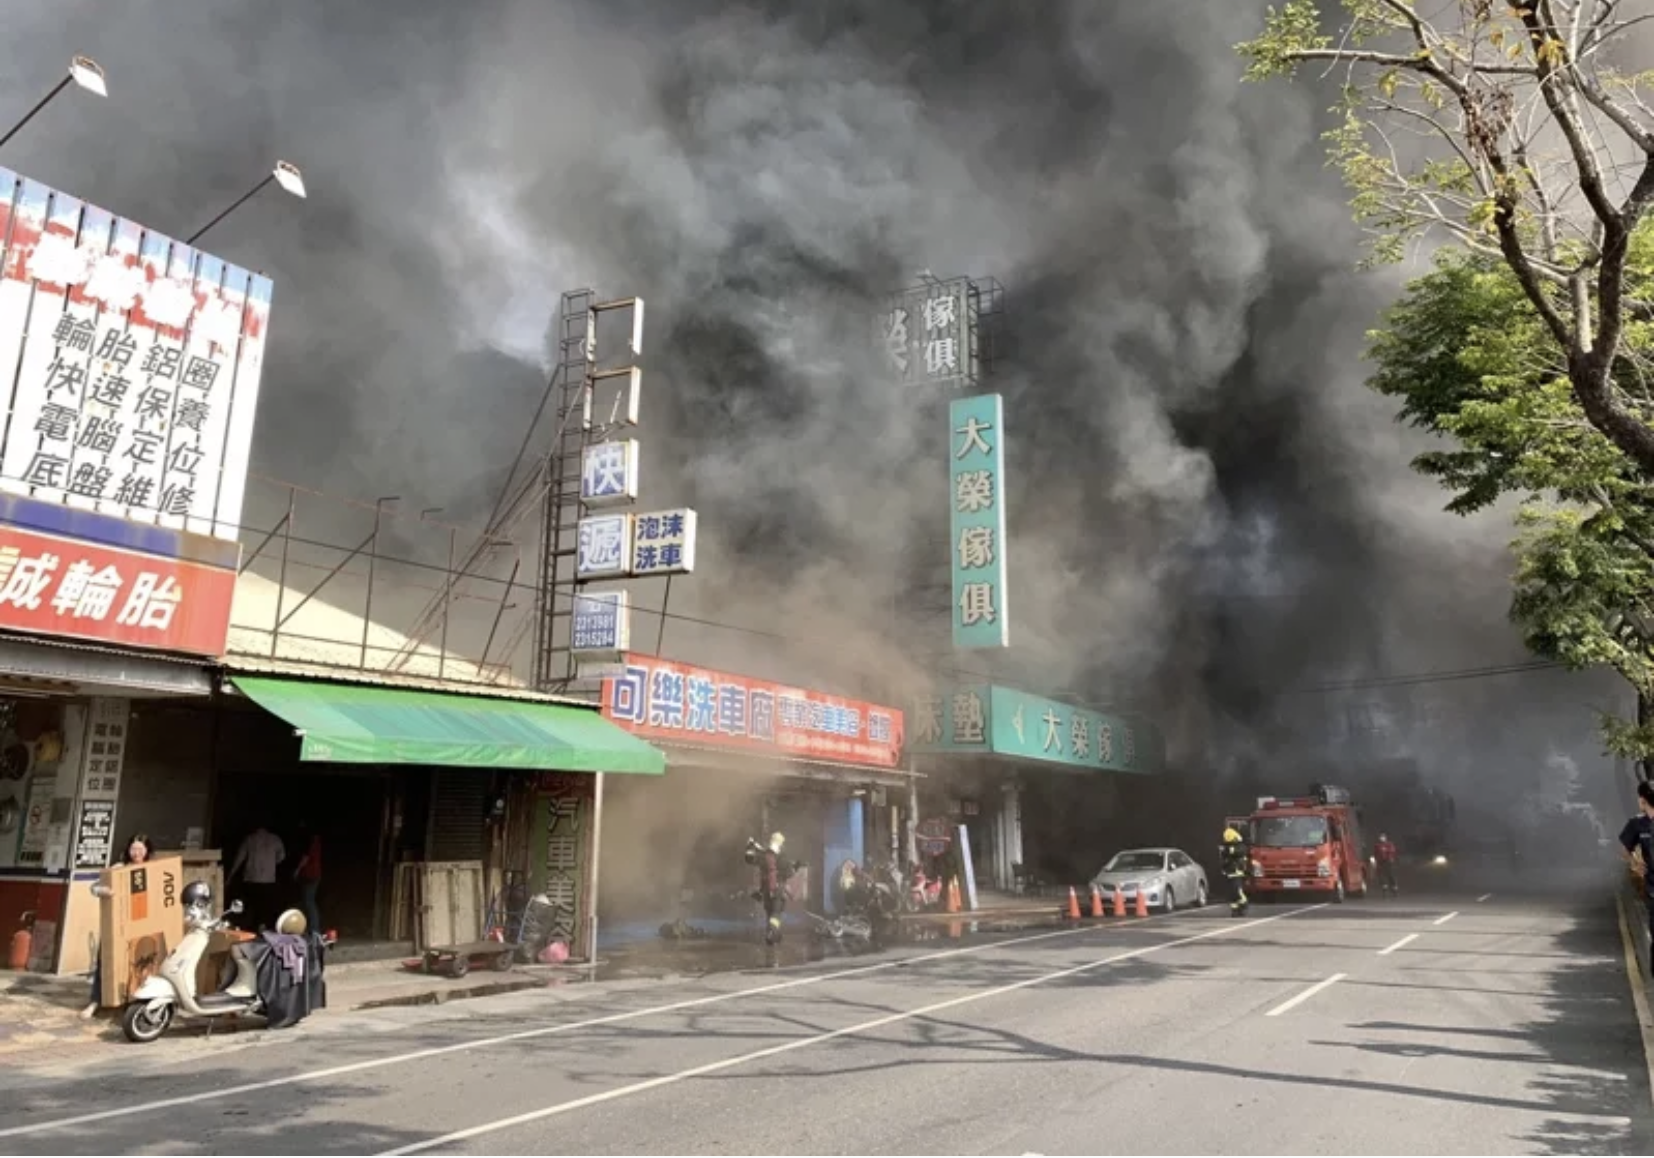 嘉市北港路家具行大火黑煙猛竄 消防到場已延燒3店